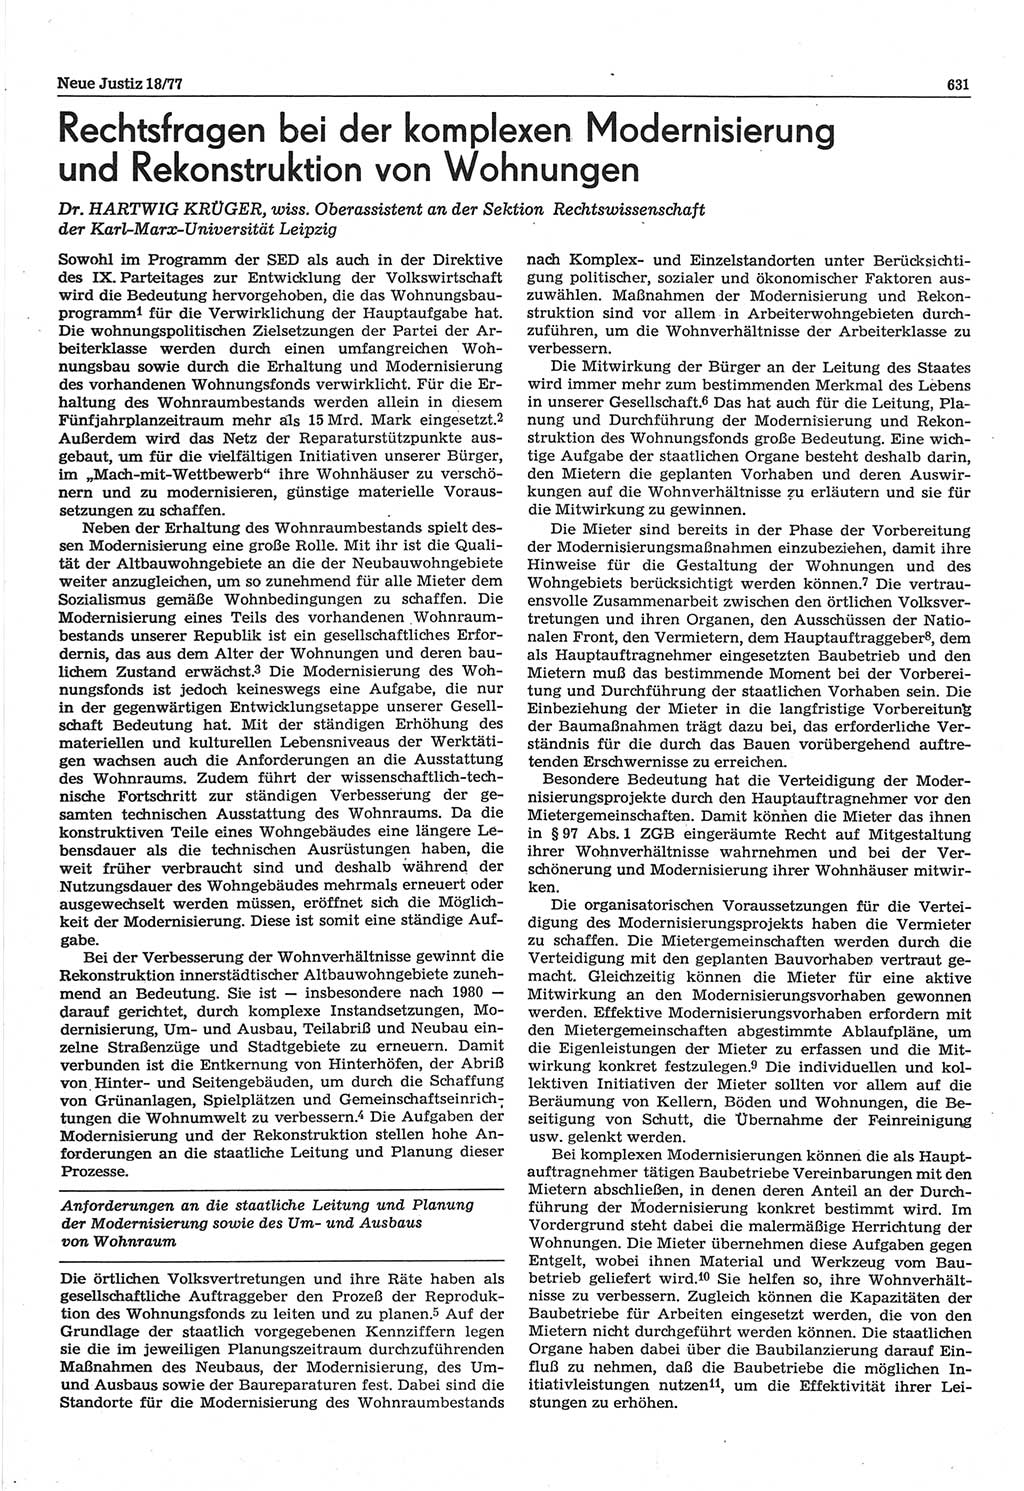 Neue Justiz (NJ), Zeitschrift für Recht und Rechtswissenschaft-Zeitschrift, sozialistisches Recht und Gesetzlichkeit, 31. Jahrgang 1977, Seite 631 (NJ DDR 1977, S. 631)